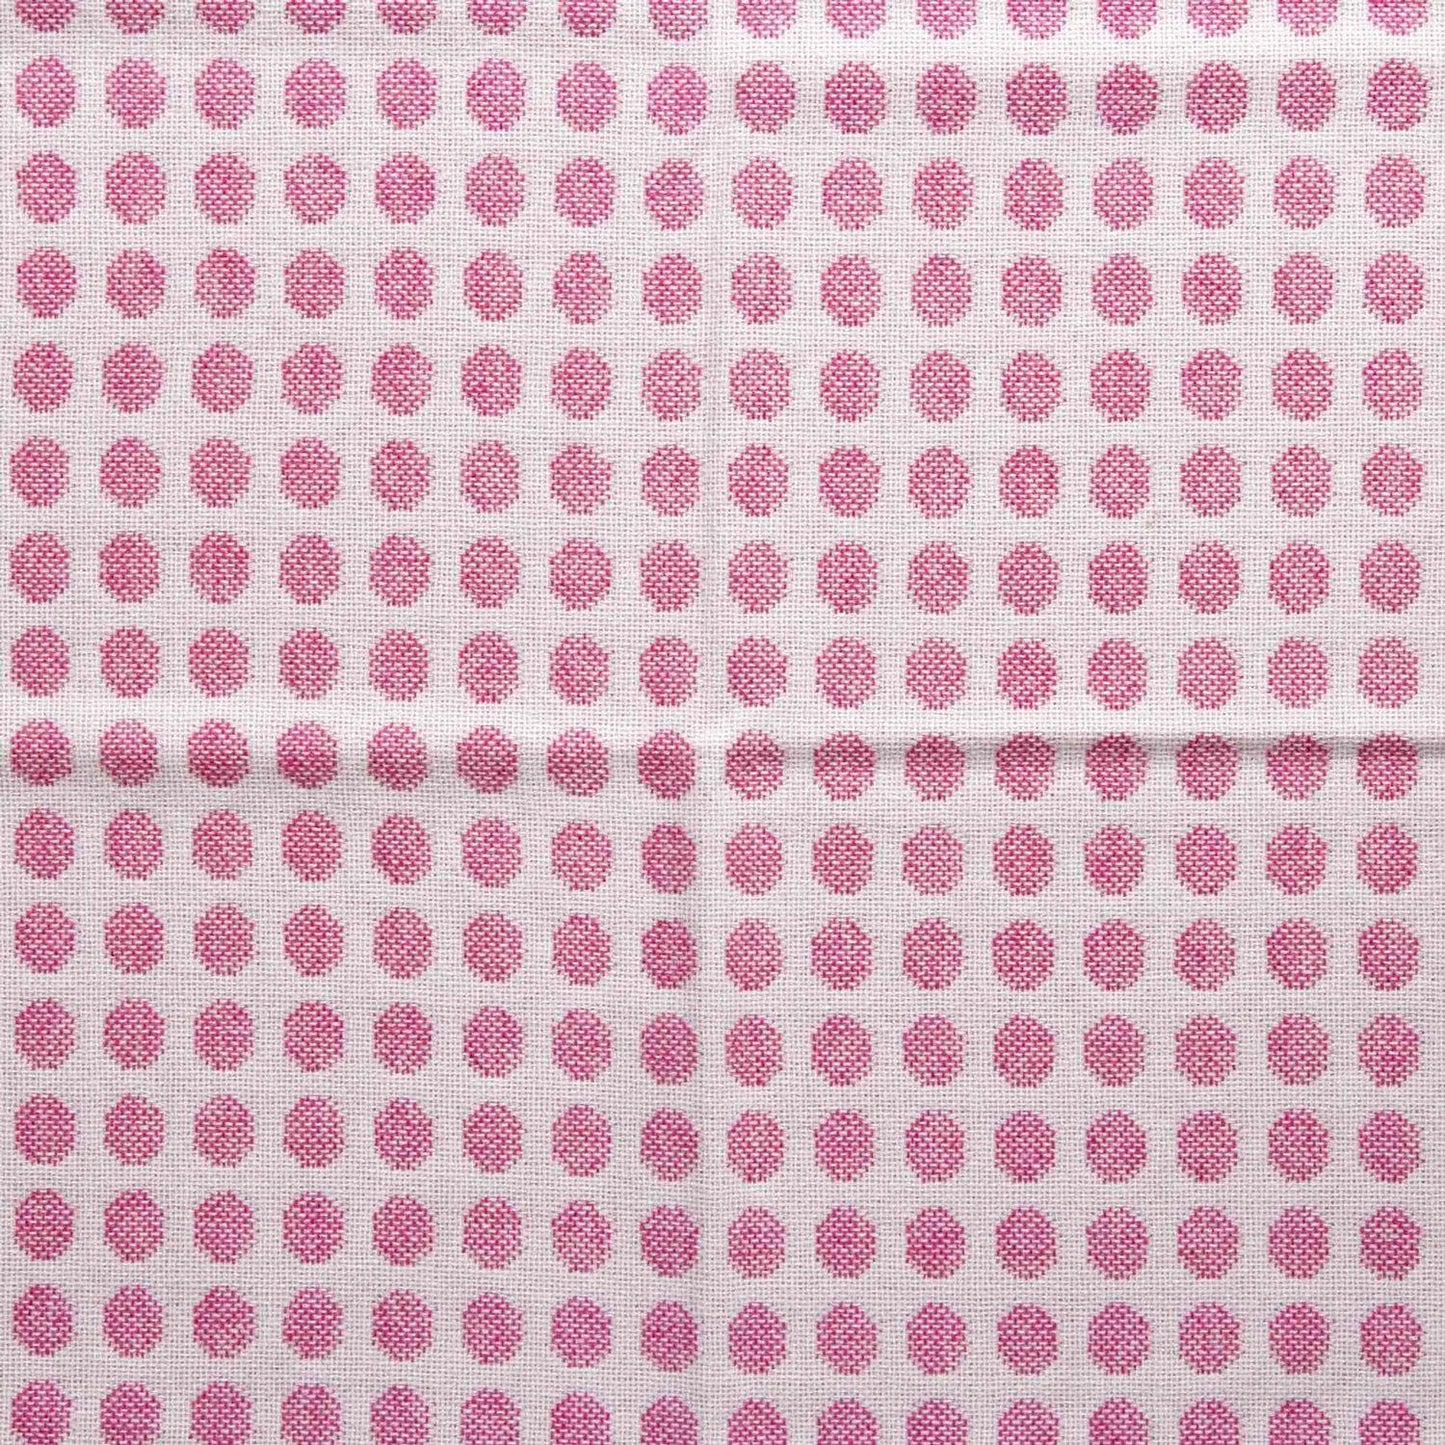 Pram Blanket - Melin Tregwynt - Baby Pink - Blossom